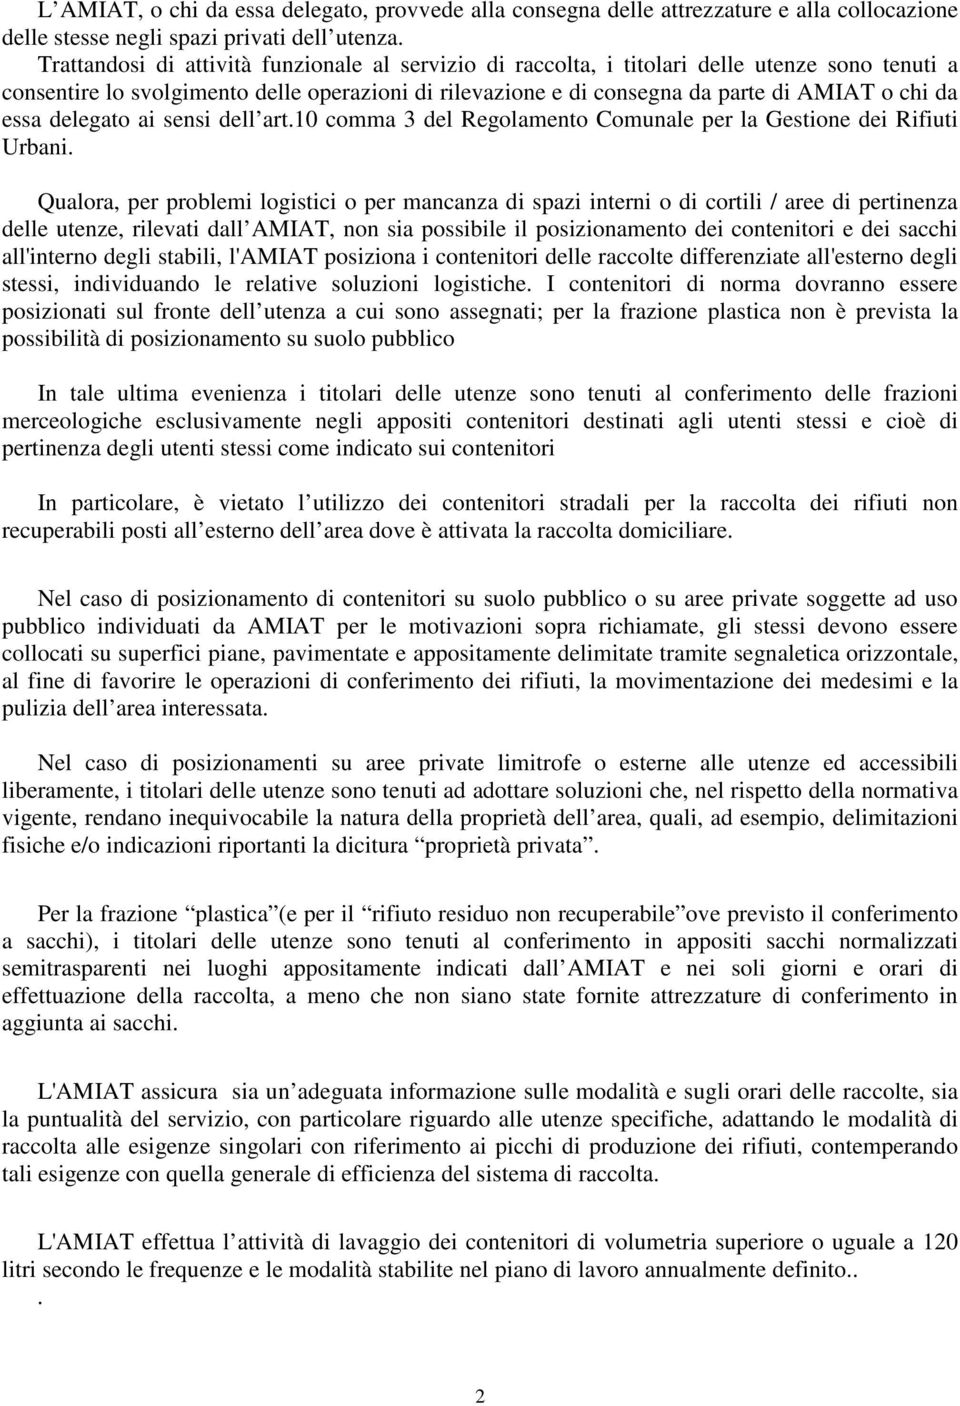 essa delegato ai sensi dell art.10 comma 3 del Regolamento Comunale per la Gestione dei Rifiuti Urbani.